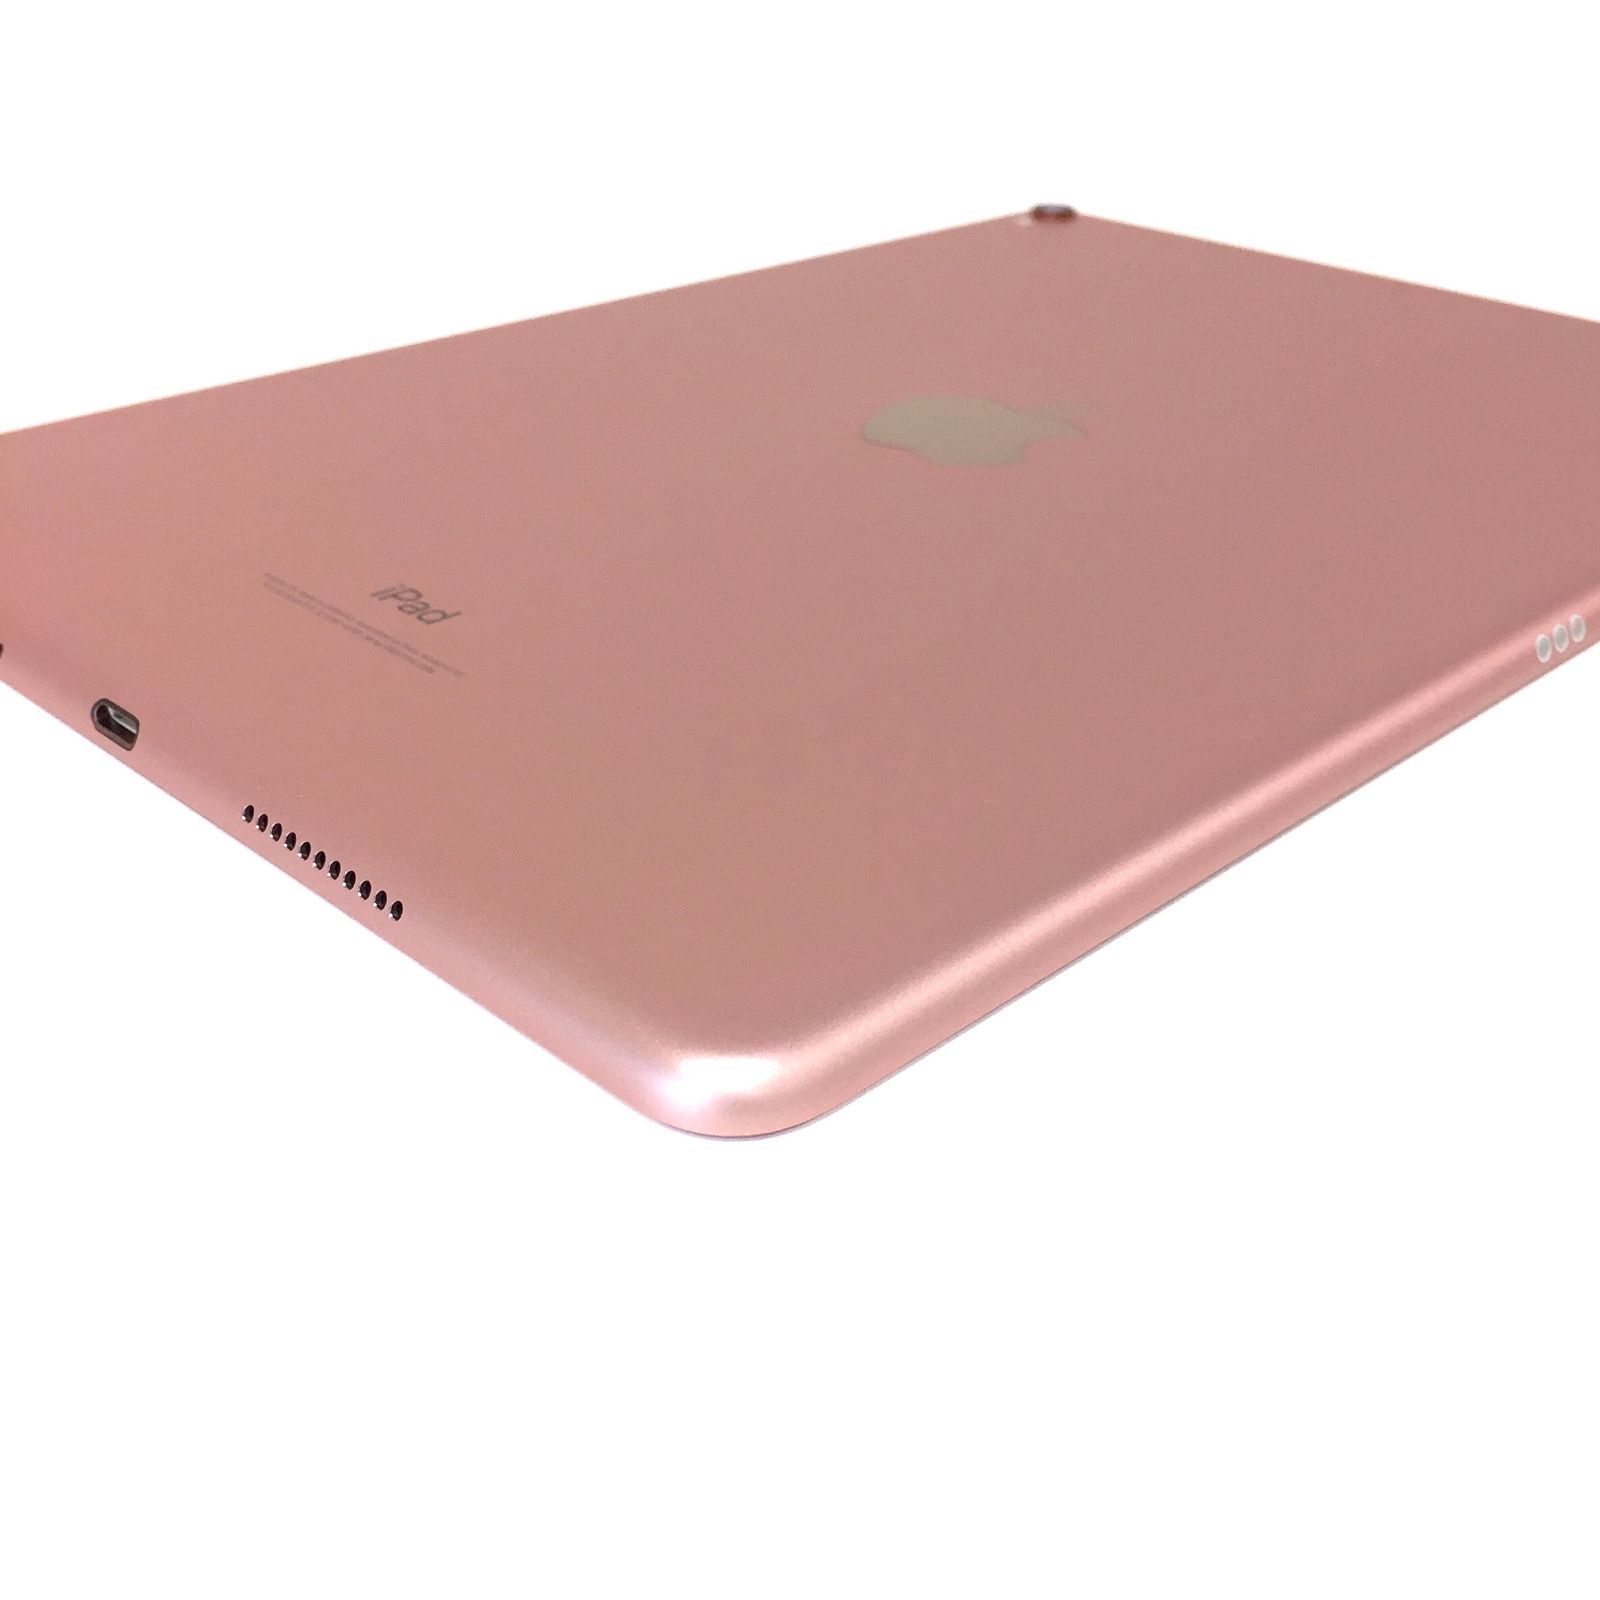 θ iPad Pro 10.5インチ Wi-Fiモデル 64GB ローズゴールド - メルカリ